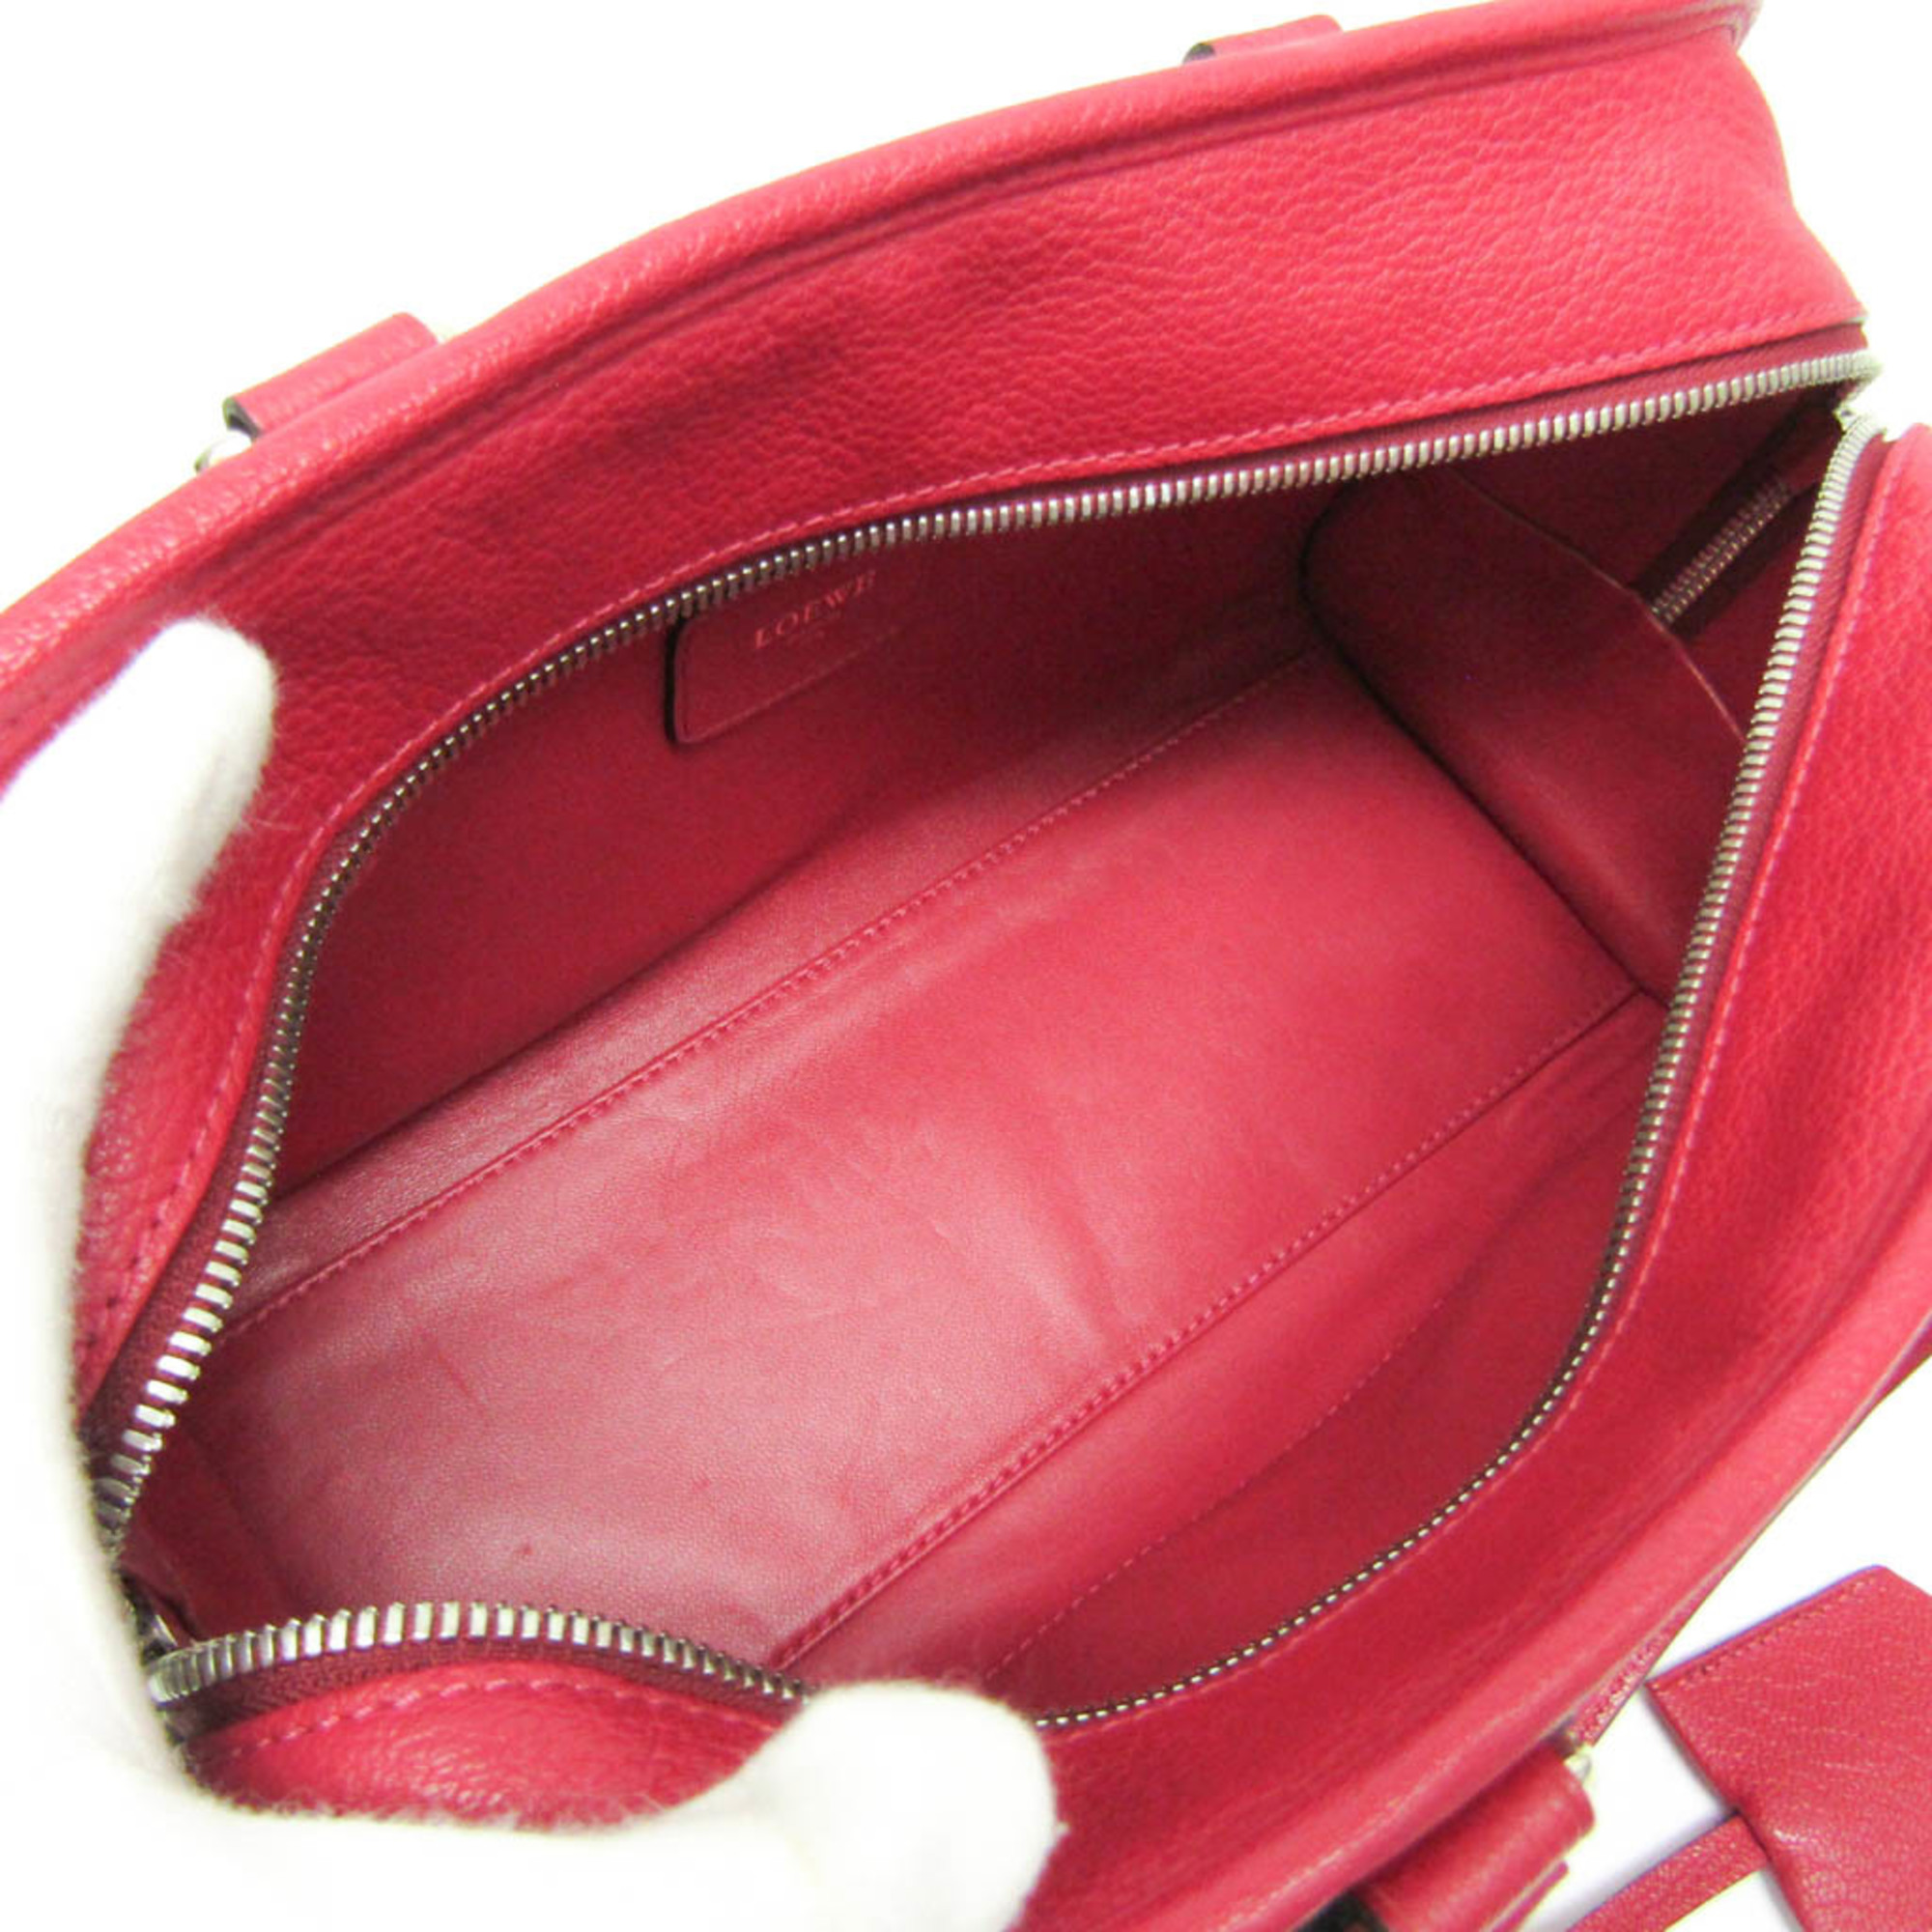 Loewe Amazona 28 Women's Leather Handbag Pink Red